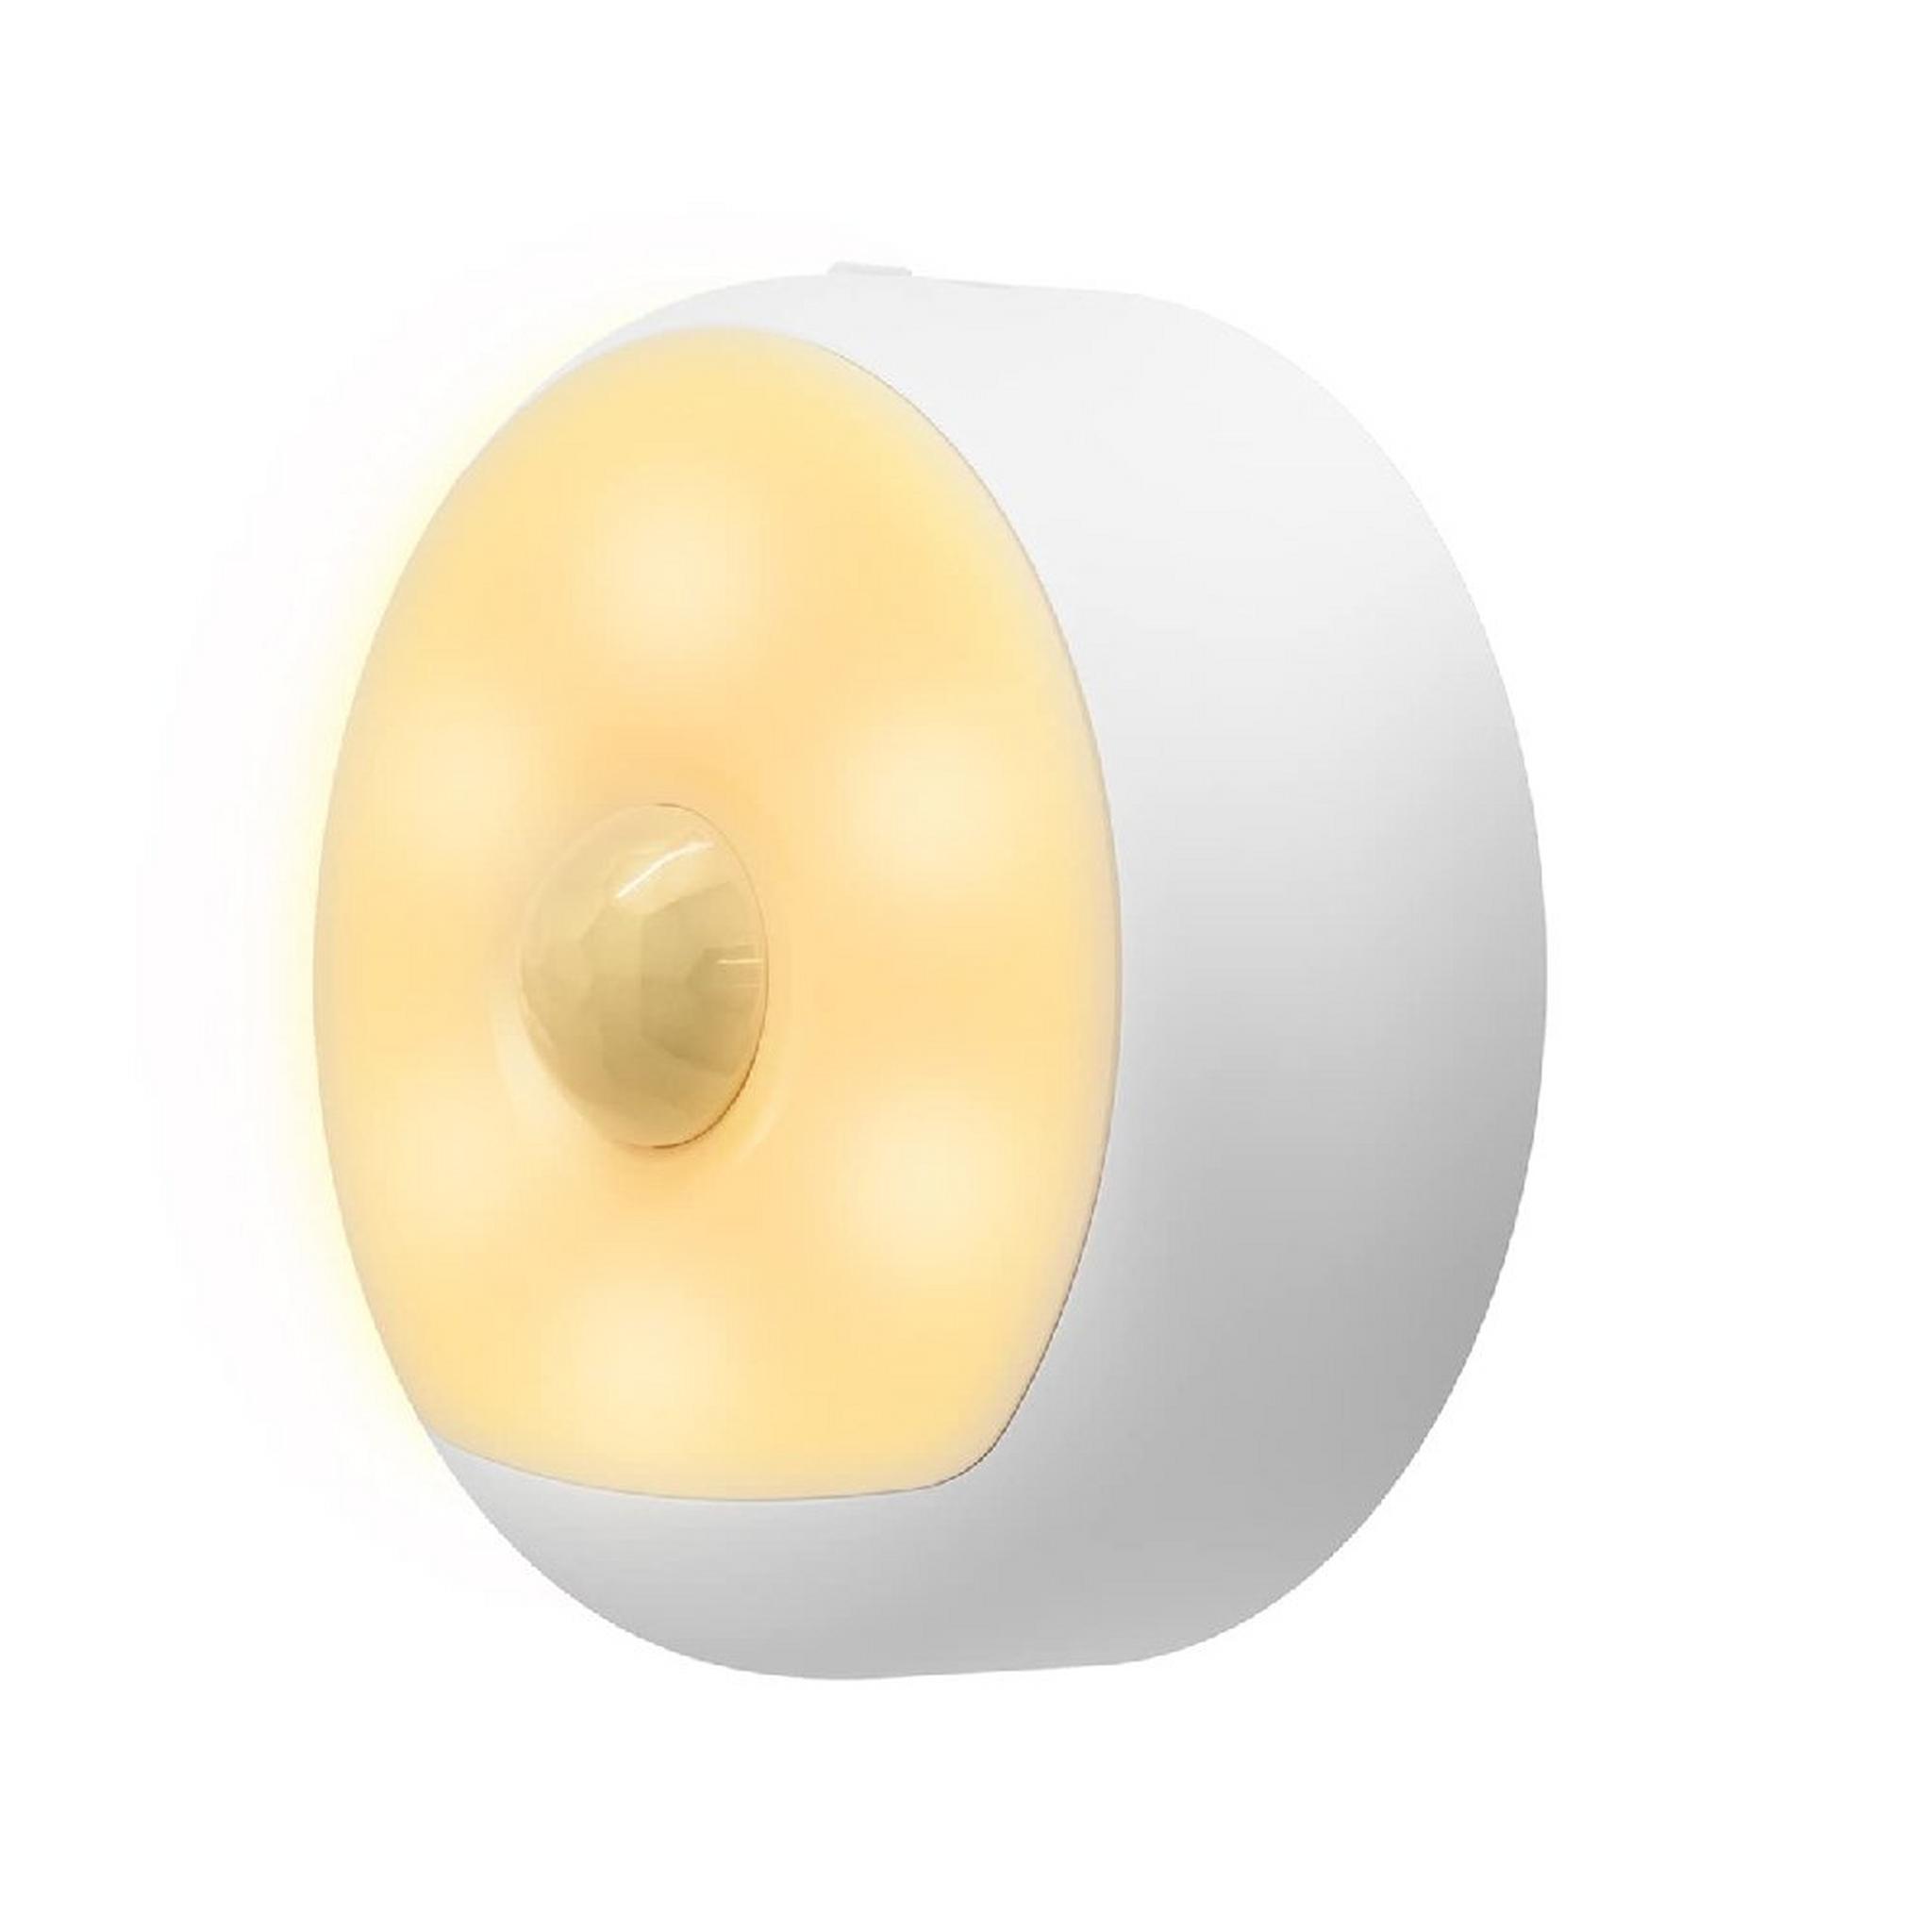 Yeelight Rechargeable Motion Sensor Nightlight, YLYD01YL - White